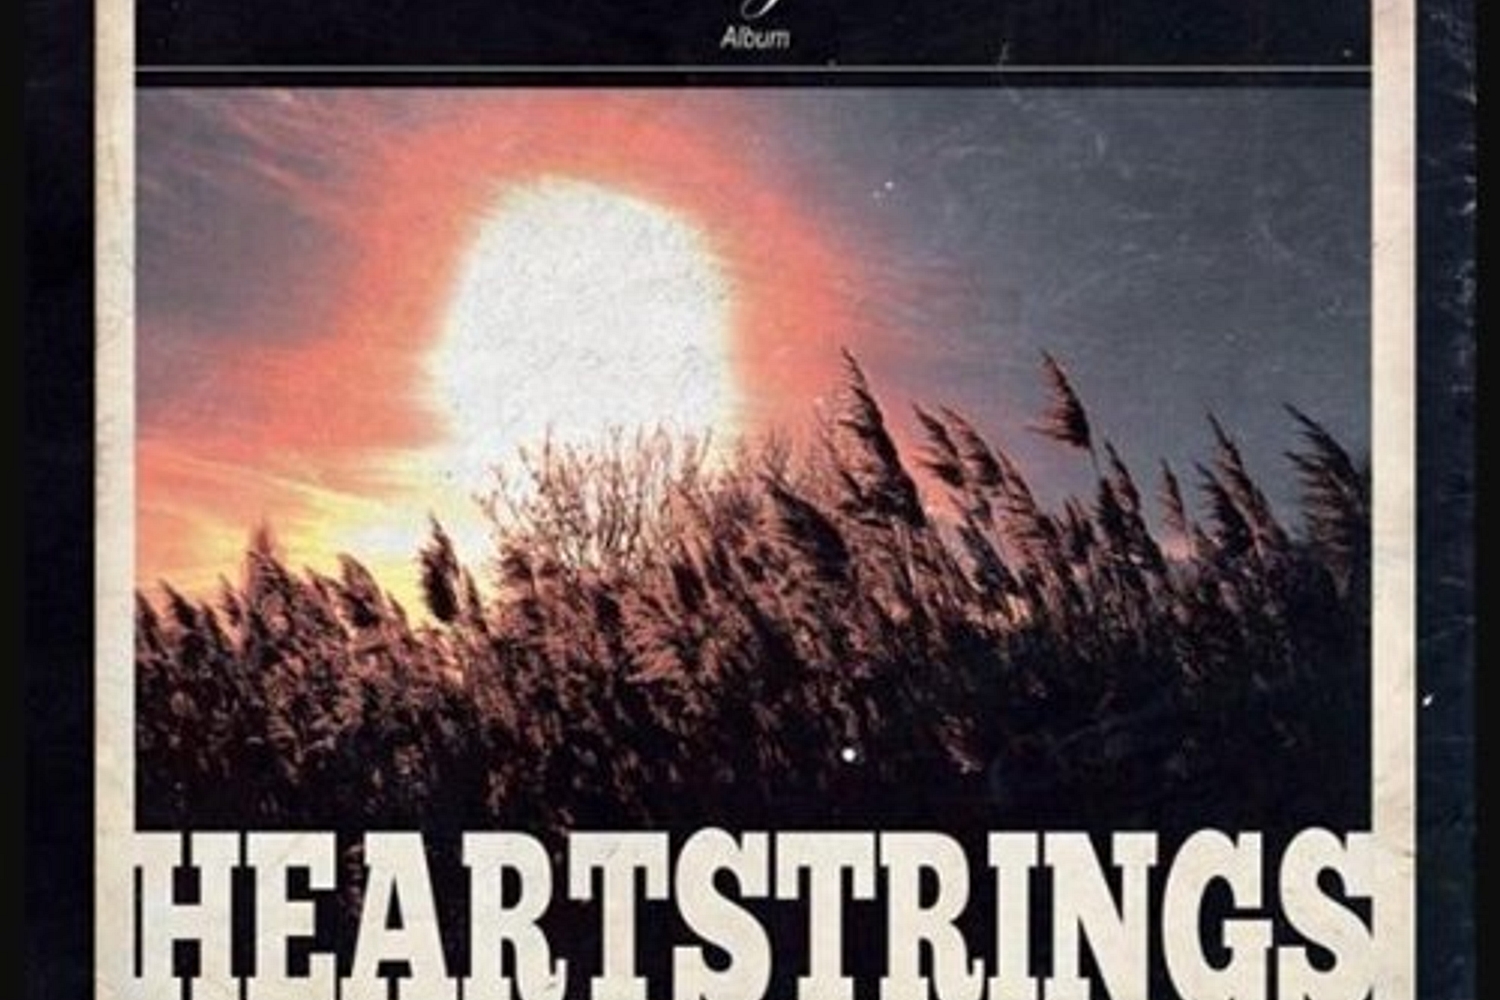 Howling Bells - Heartstrings